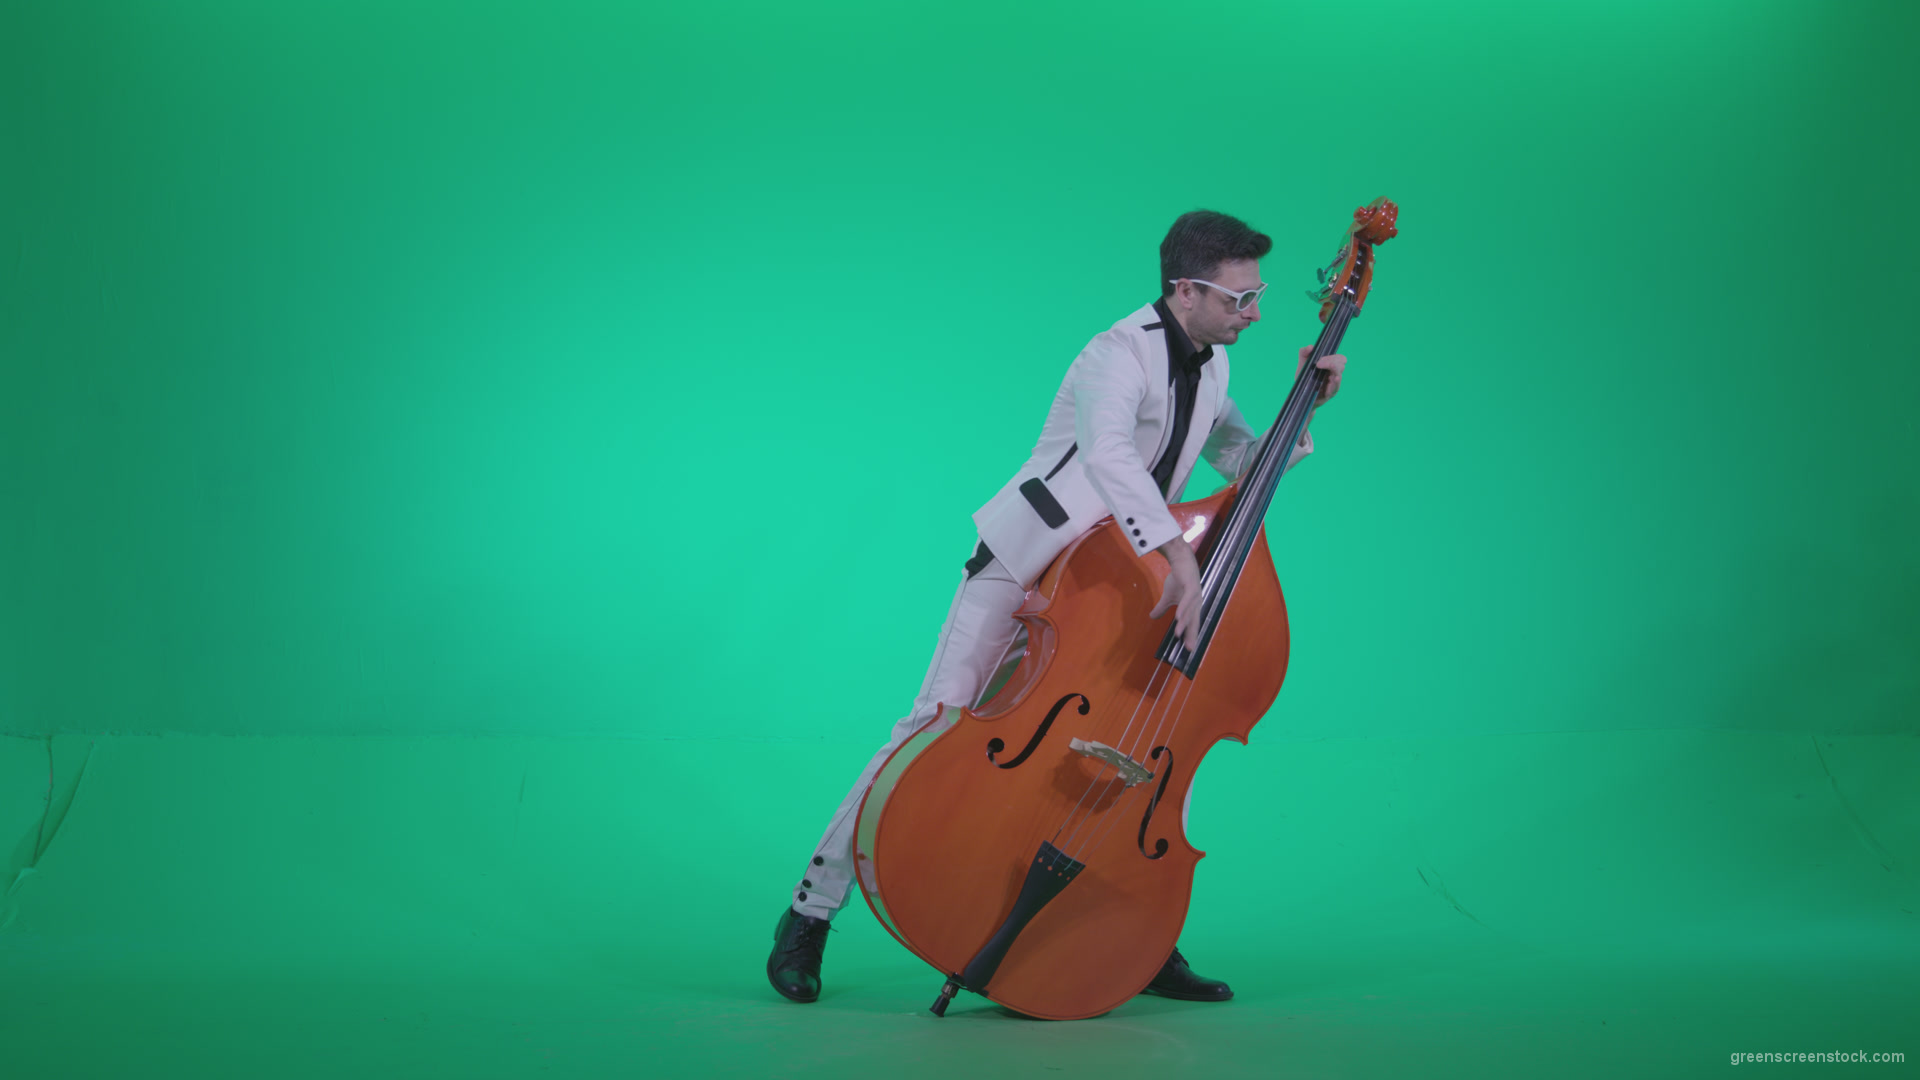 Contrabass-Jazz-Performer-j11-Green-Screen-Video-Footage_004 Green Screen Stock